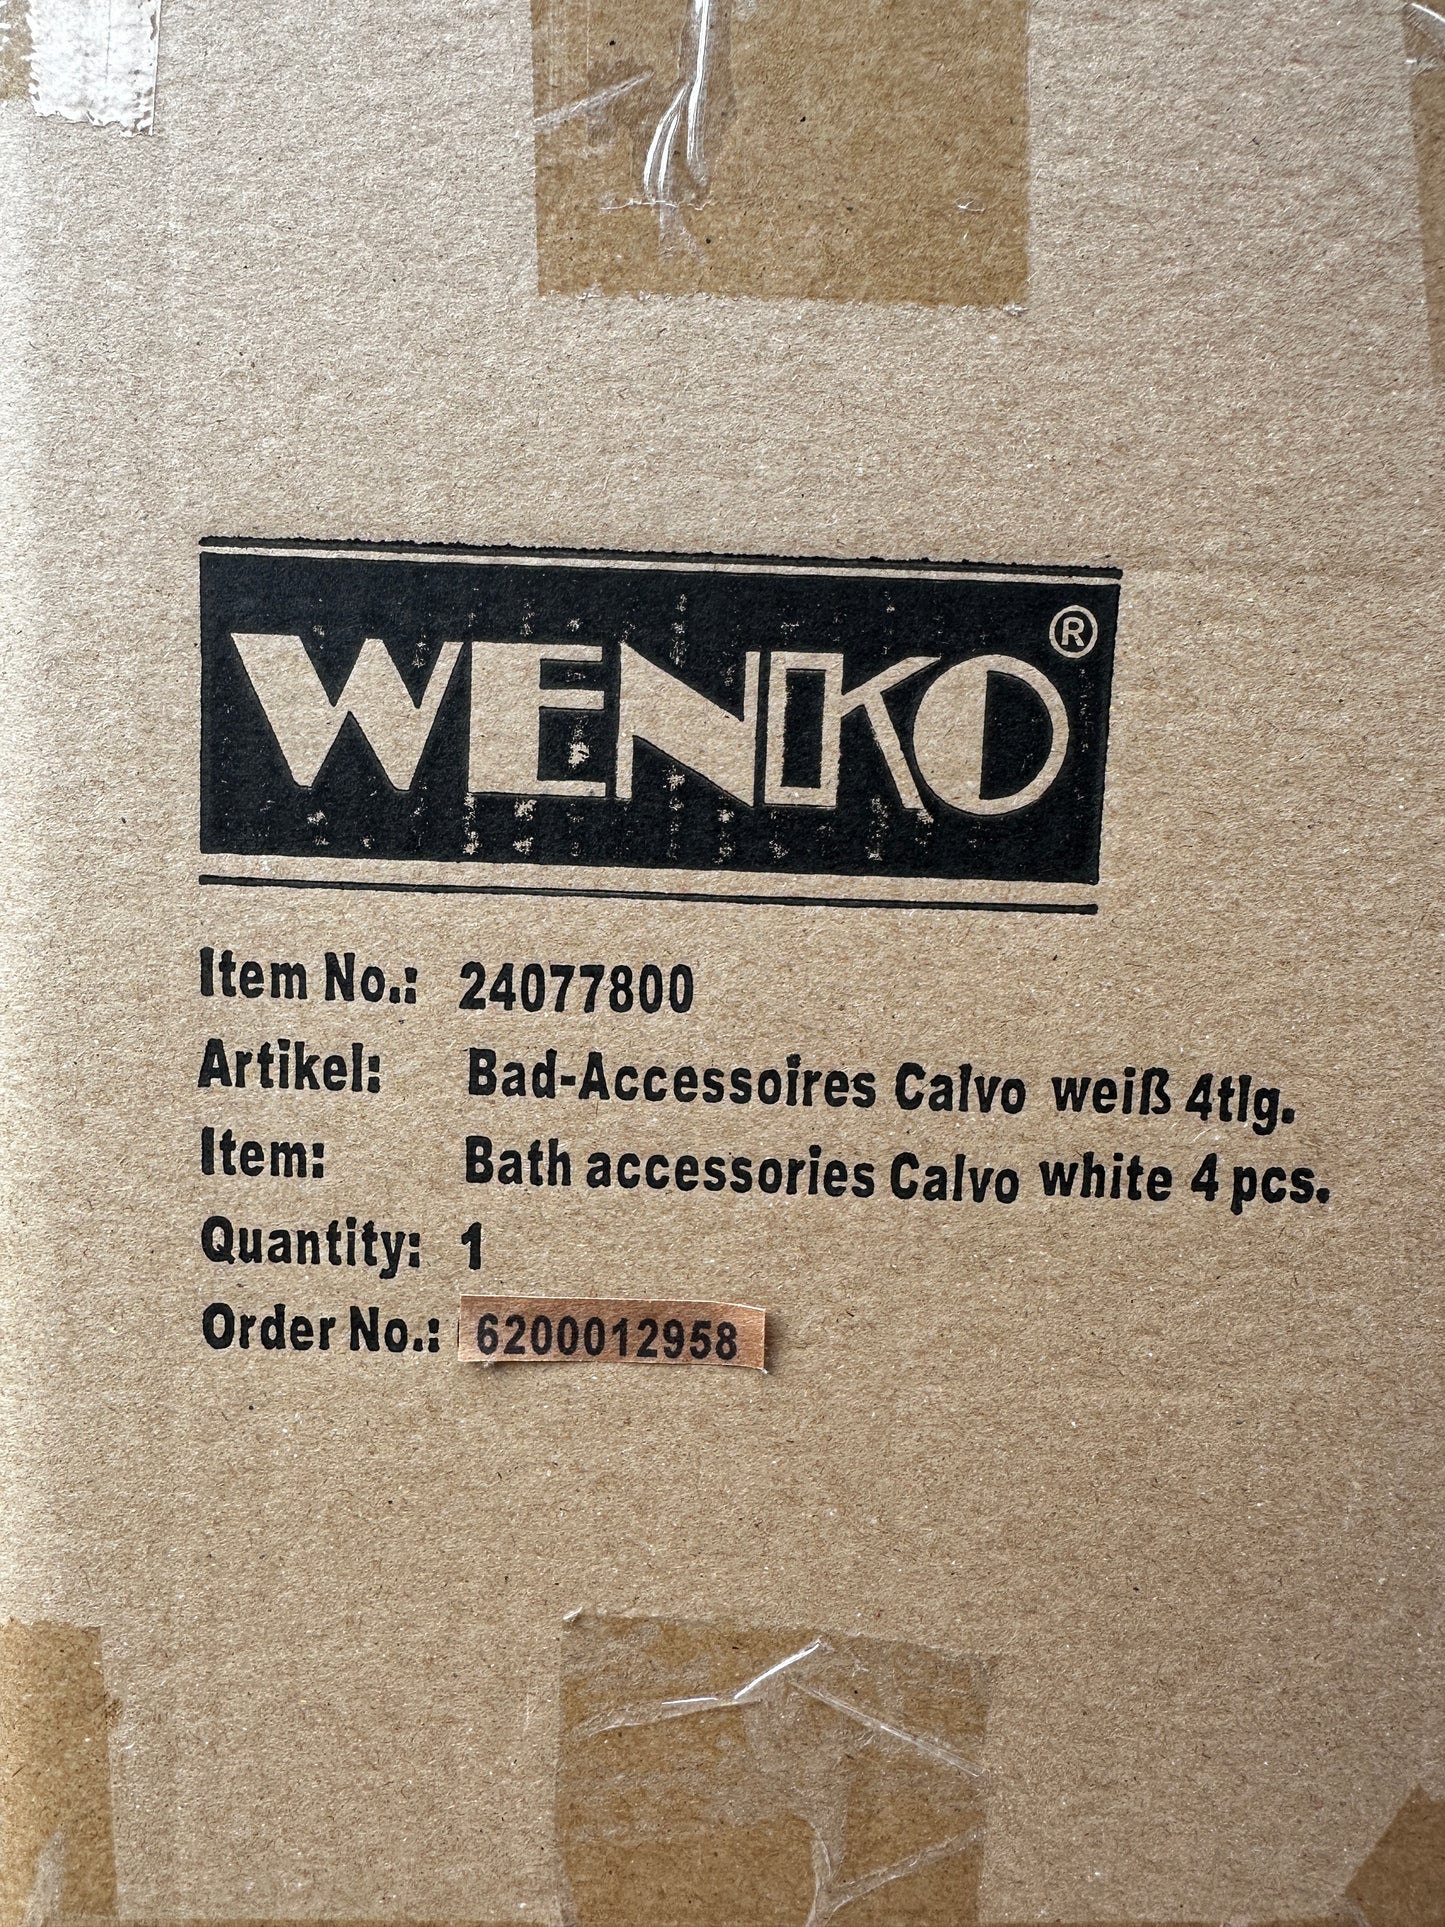 Bad Accessoires Wenko